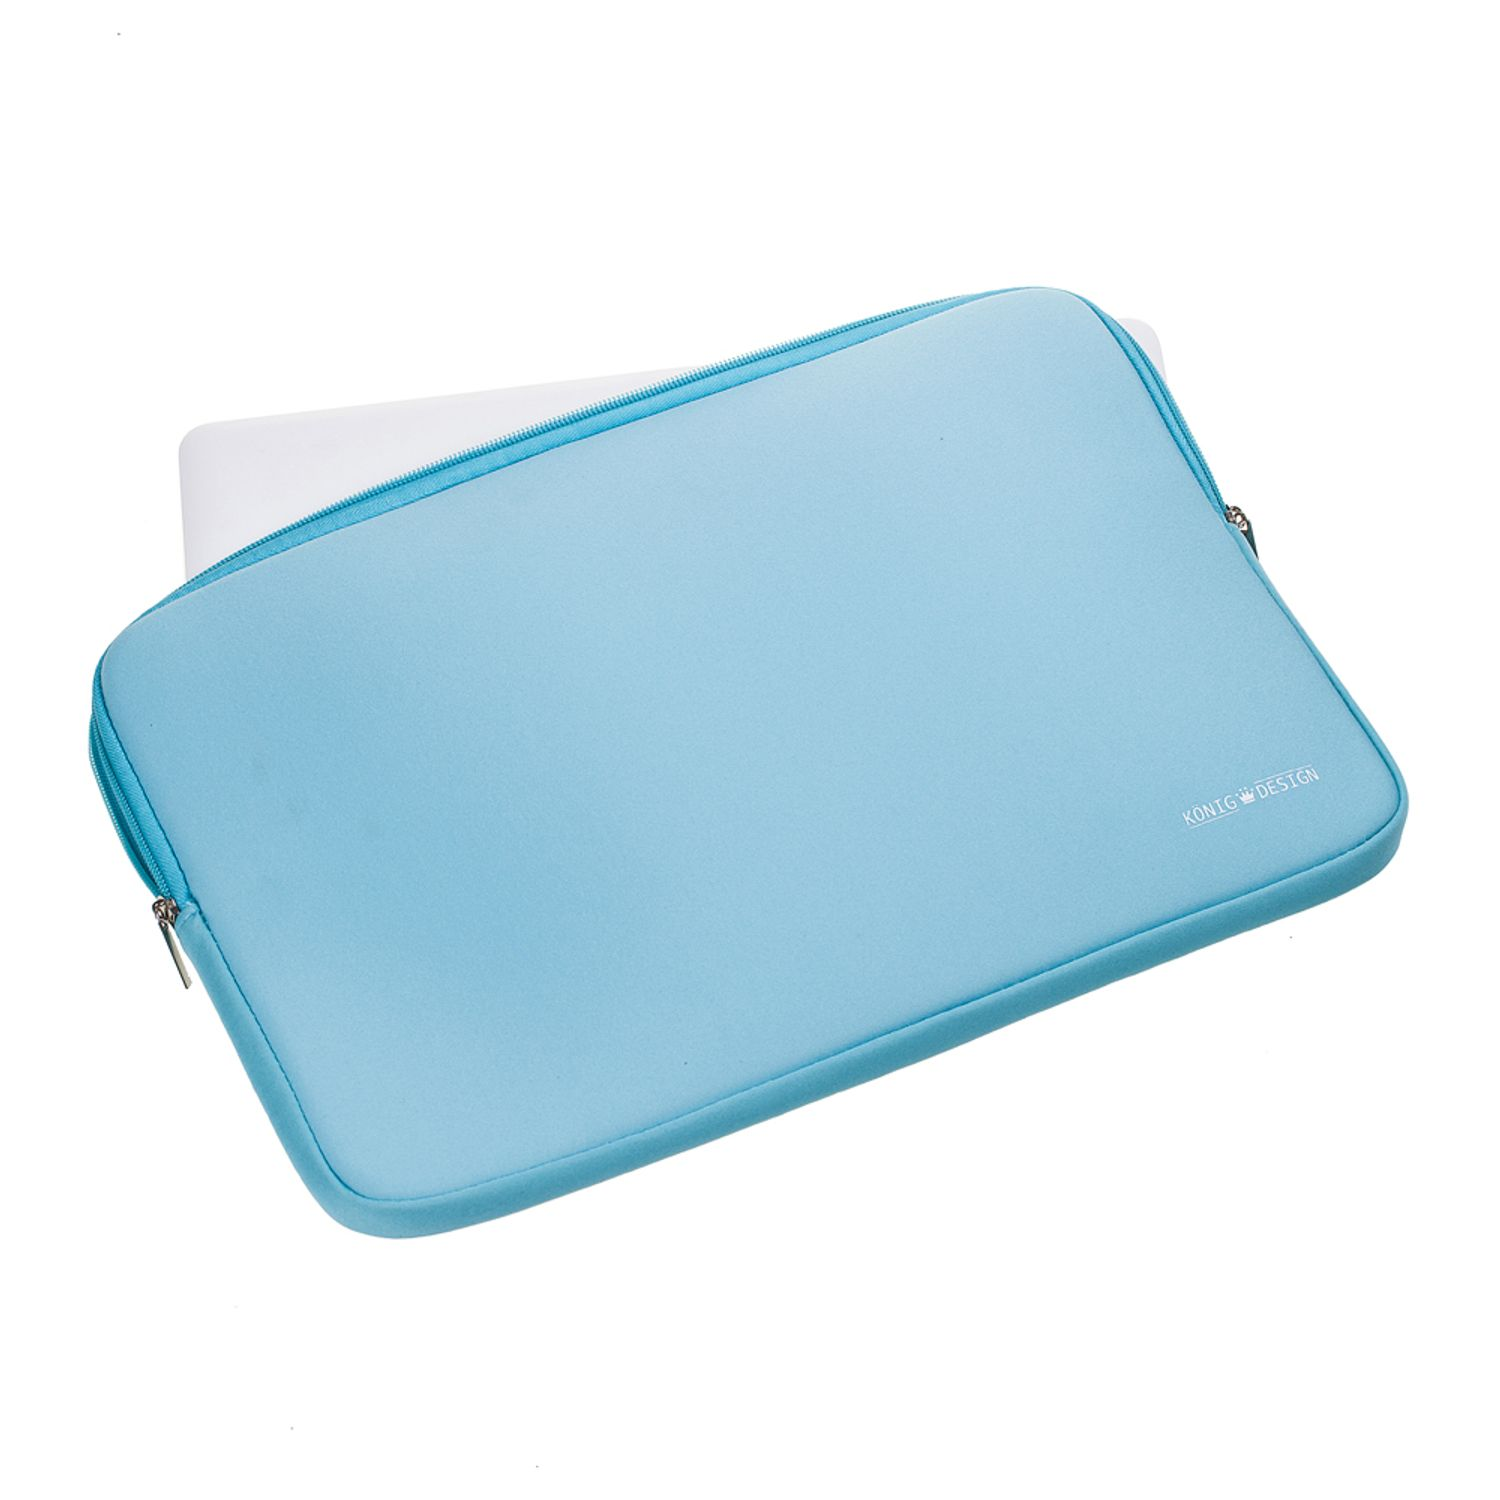 für Neoprene, Sleeve Laptop Lenovo Apple DESIGN Samsung Tasche Notebooktasche KÖNIG Laptoptasche Universal Blau